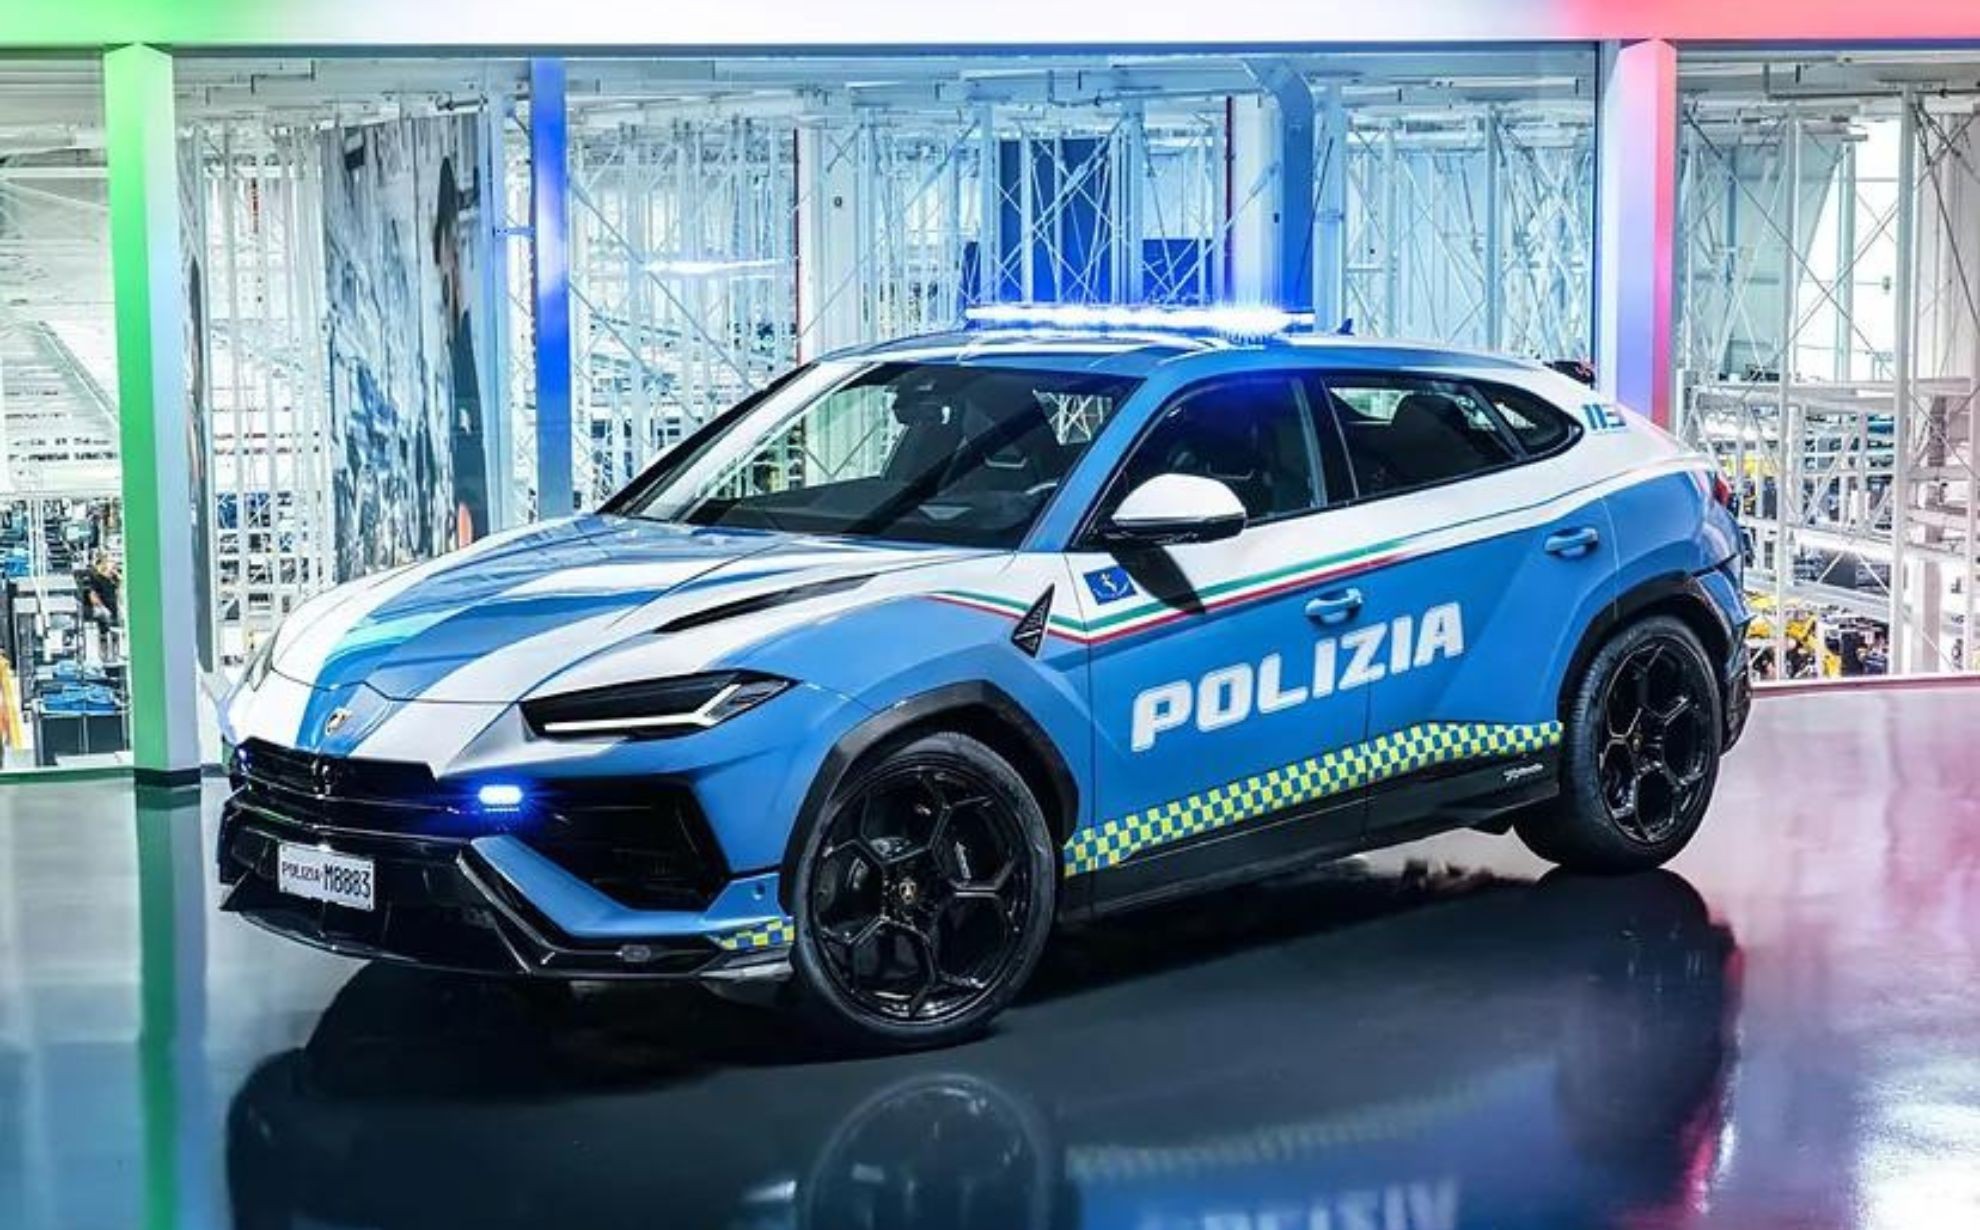 Lamborghini que chega a 300 km/h vira carro de polícia na Itália